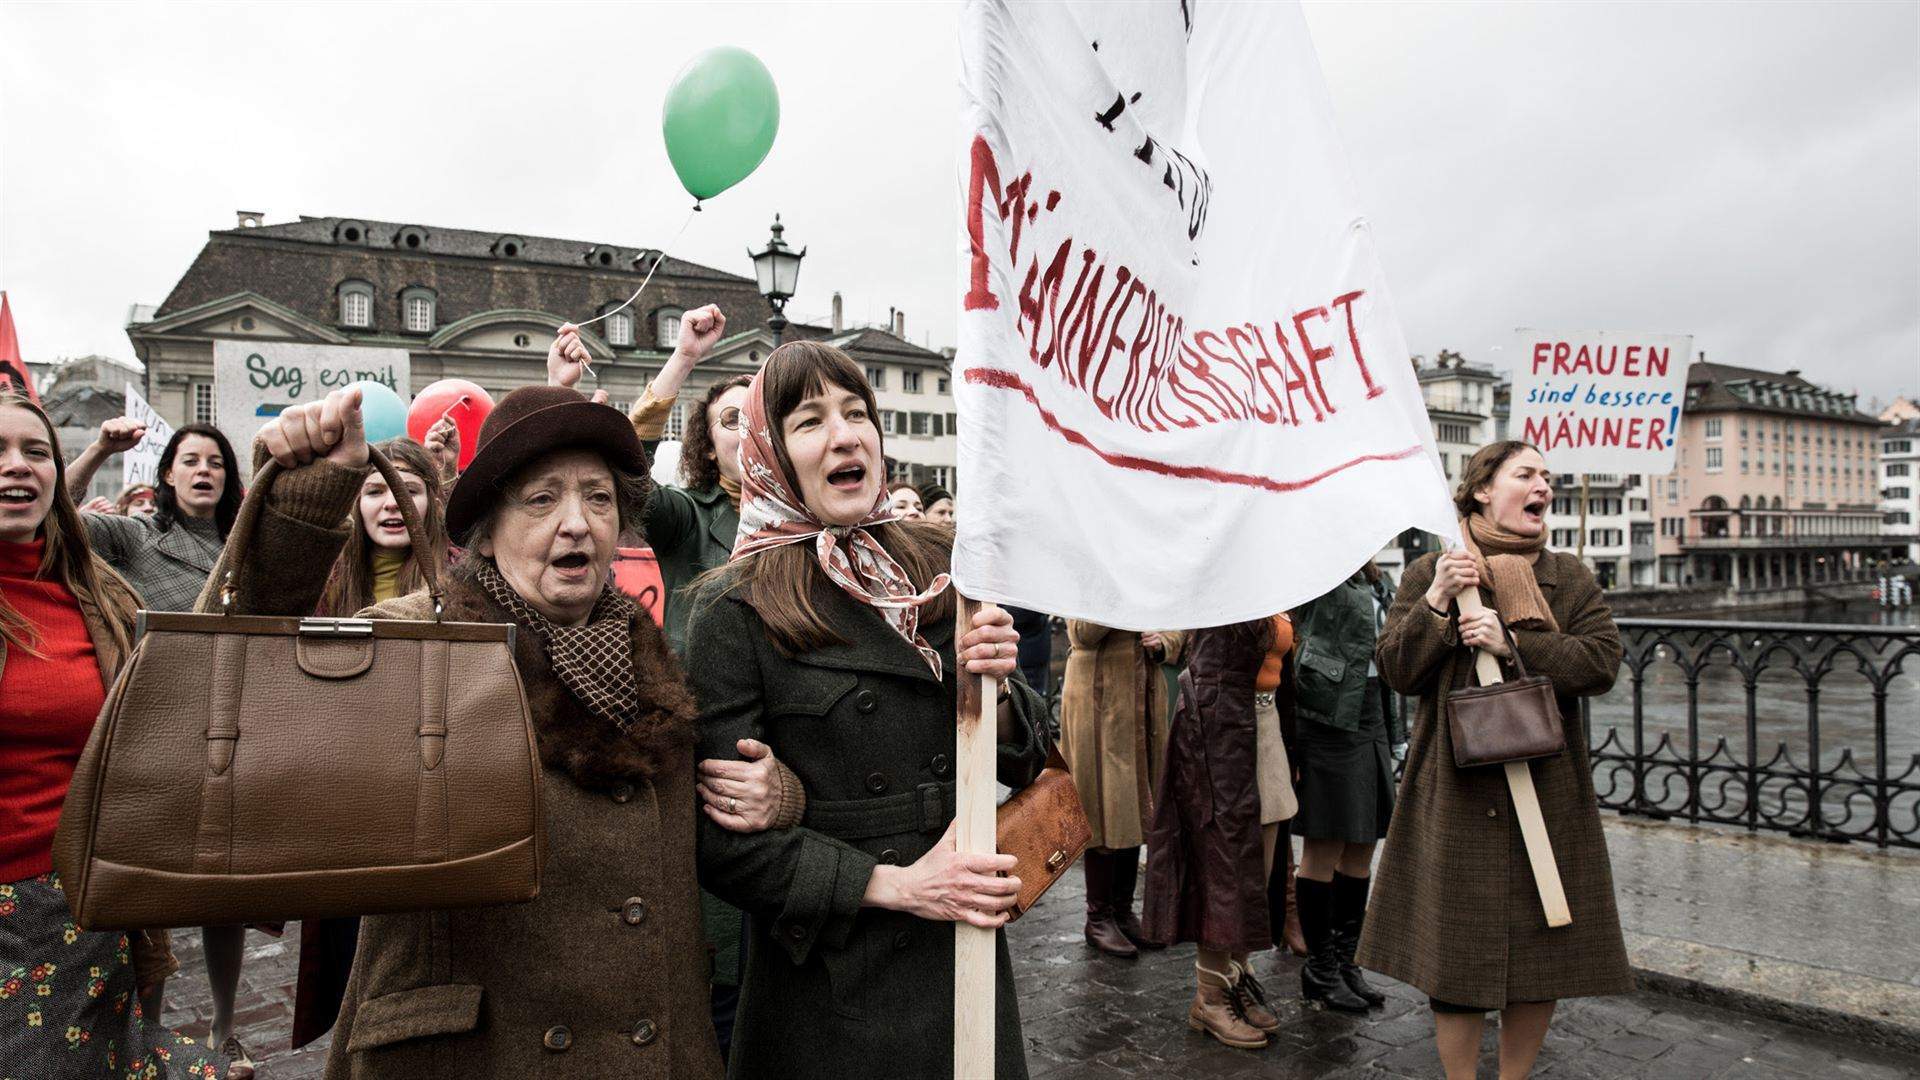 Ce n'est qu'en 1971 que le droit de vote a été accordé aux femmes, en Suisse.